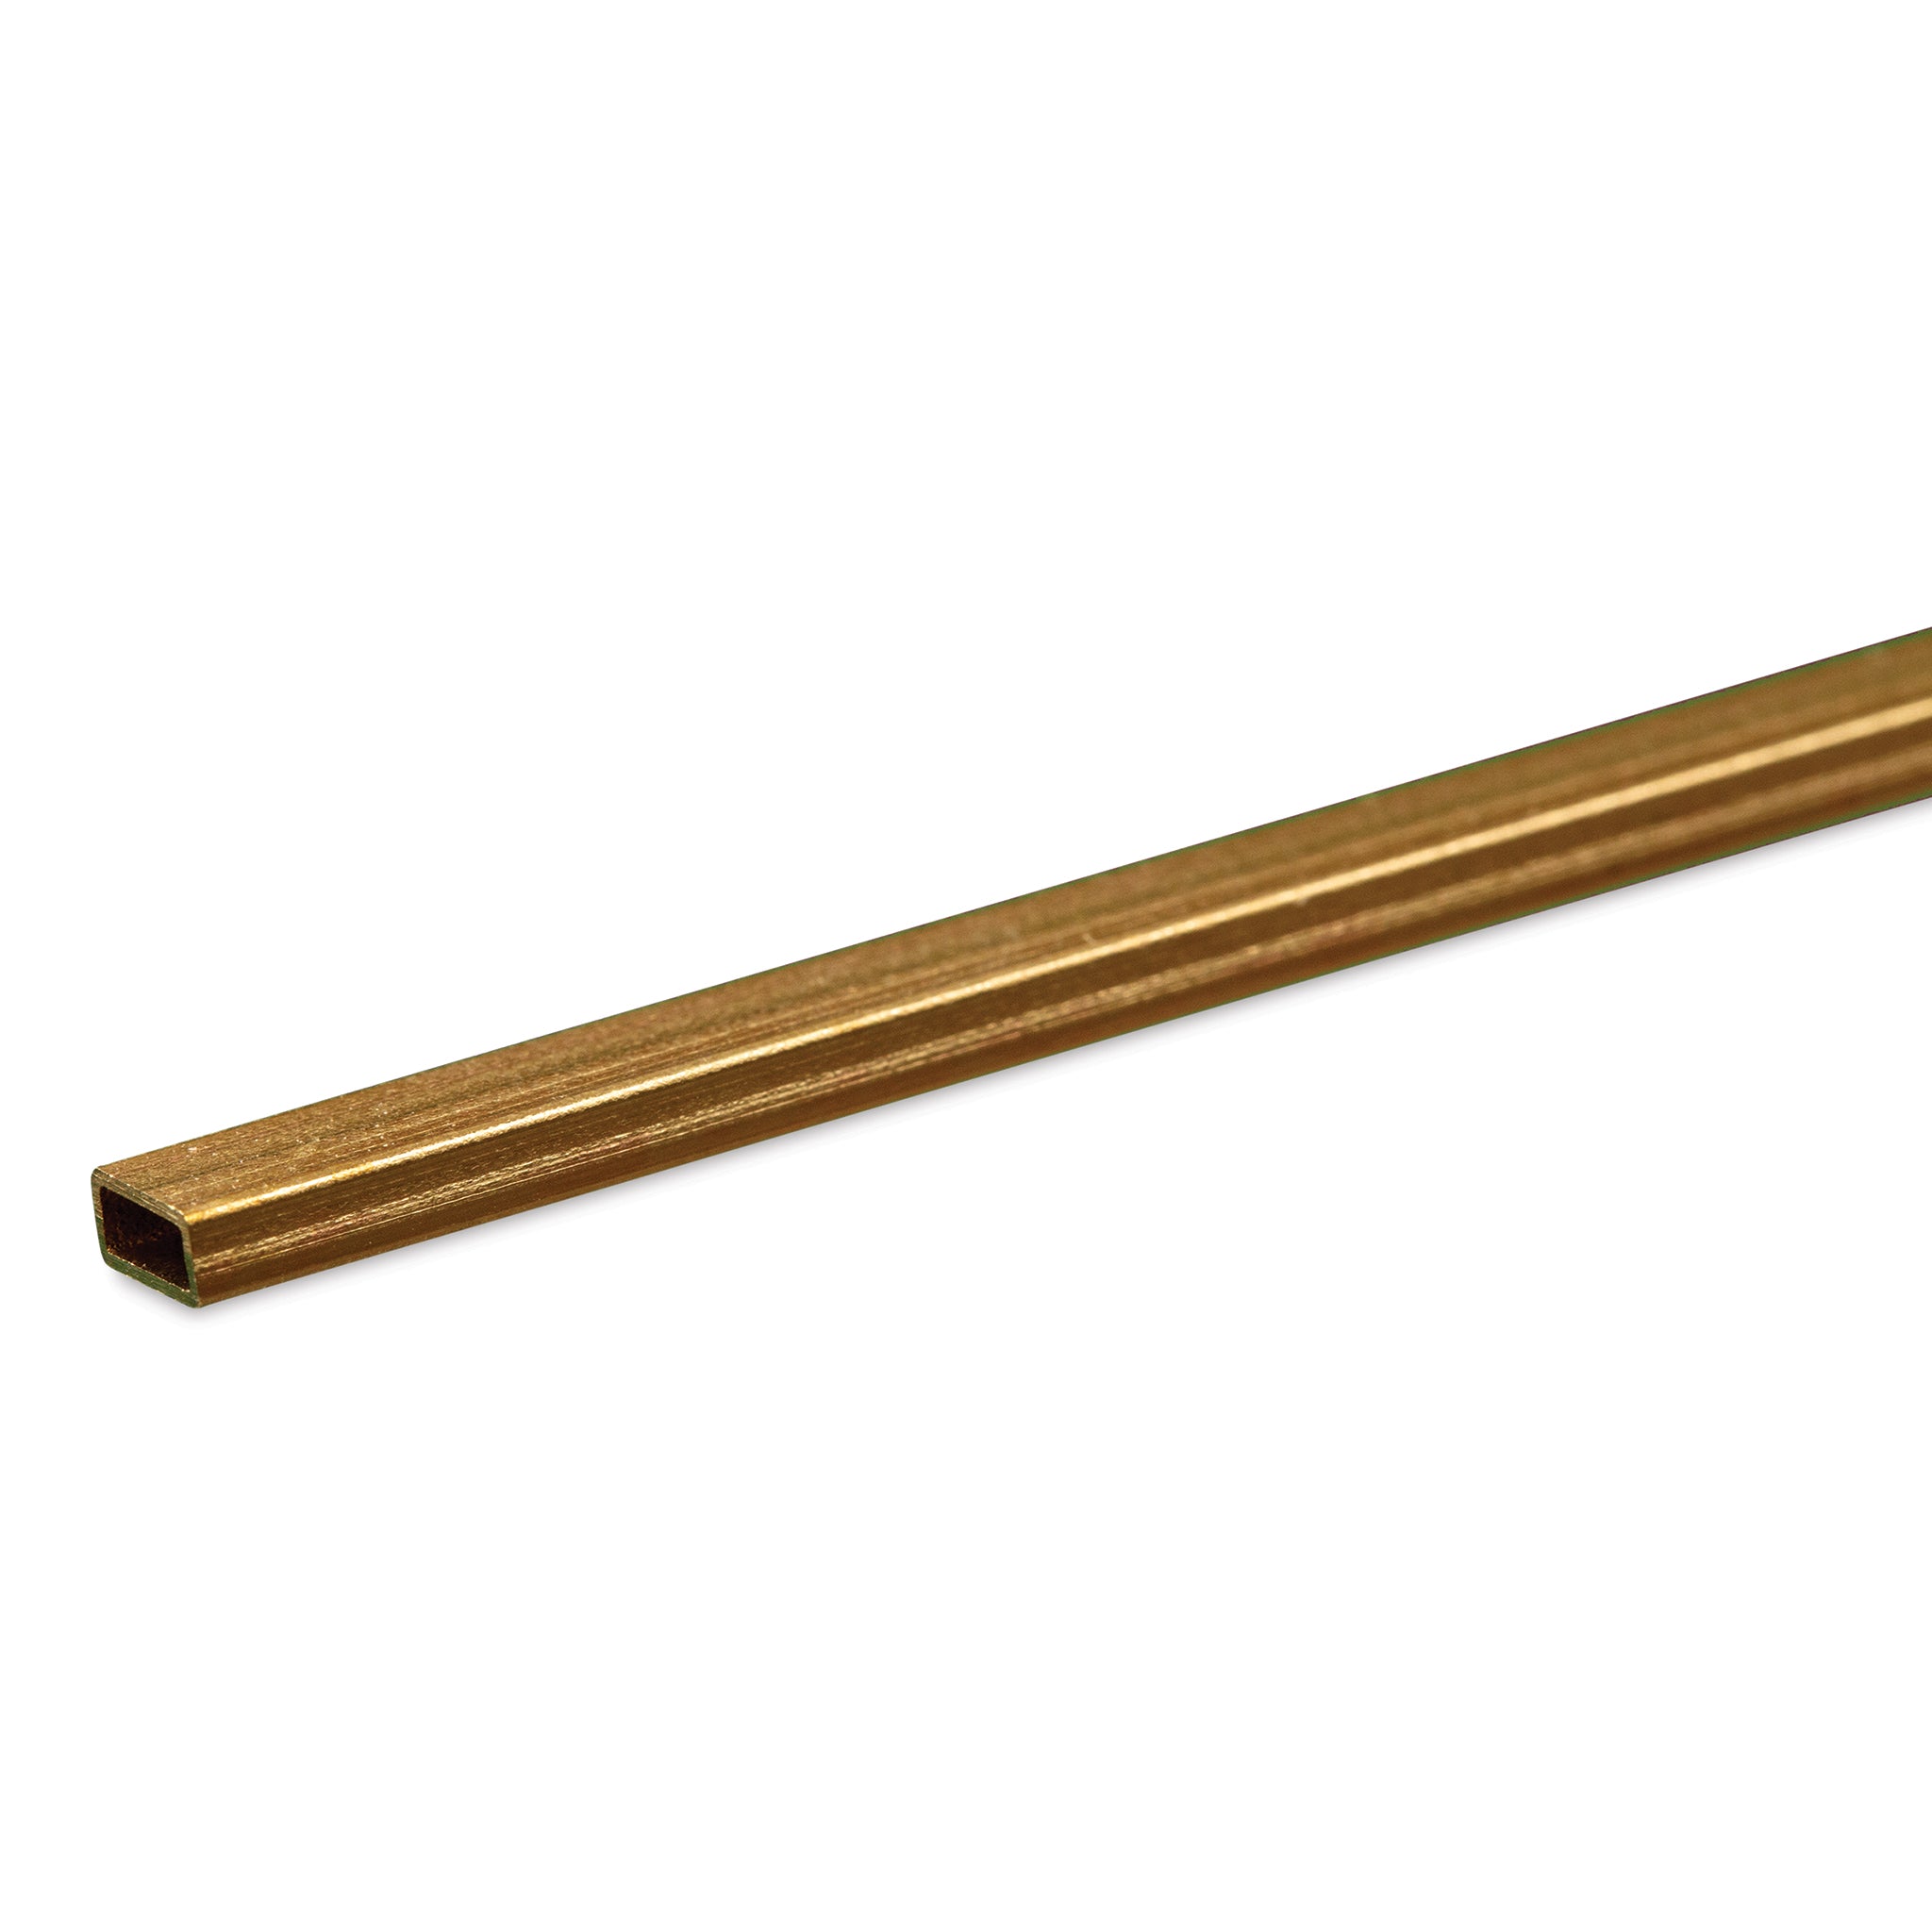 K&S Metals 8262 Rectangular Brass Tube 3/32" x 3/16" x 0.014" Wall x 12" Long (1 Piece)